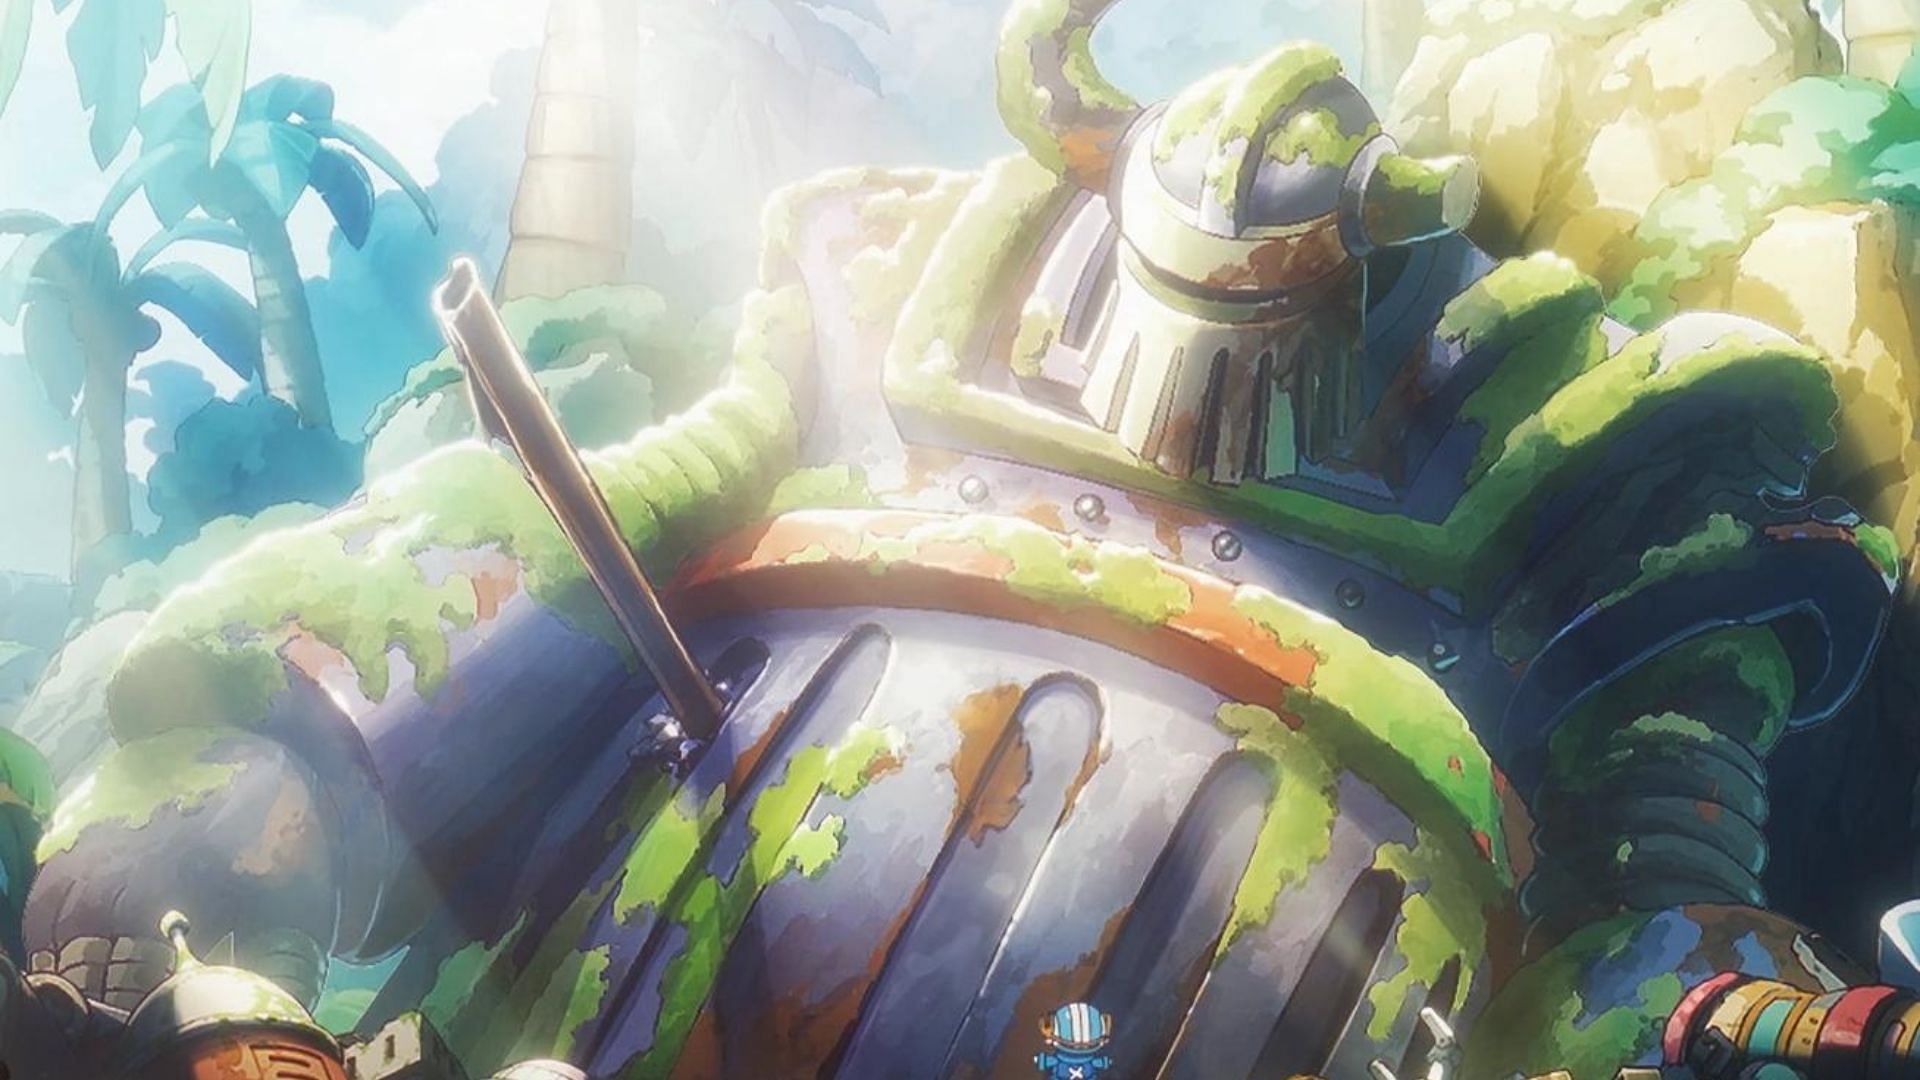 The Iron Giant at Egghead Island (Image via Toei Animation)